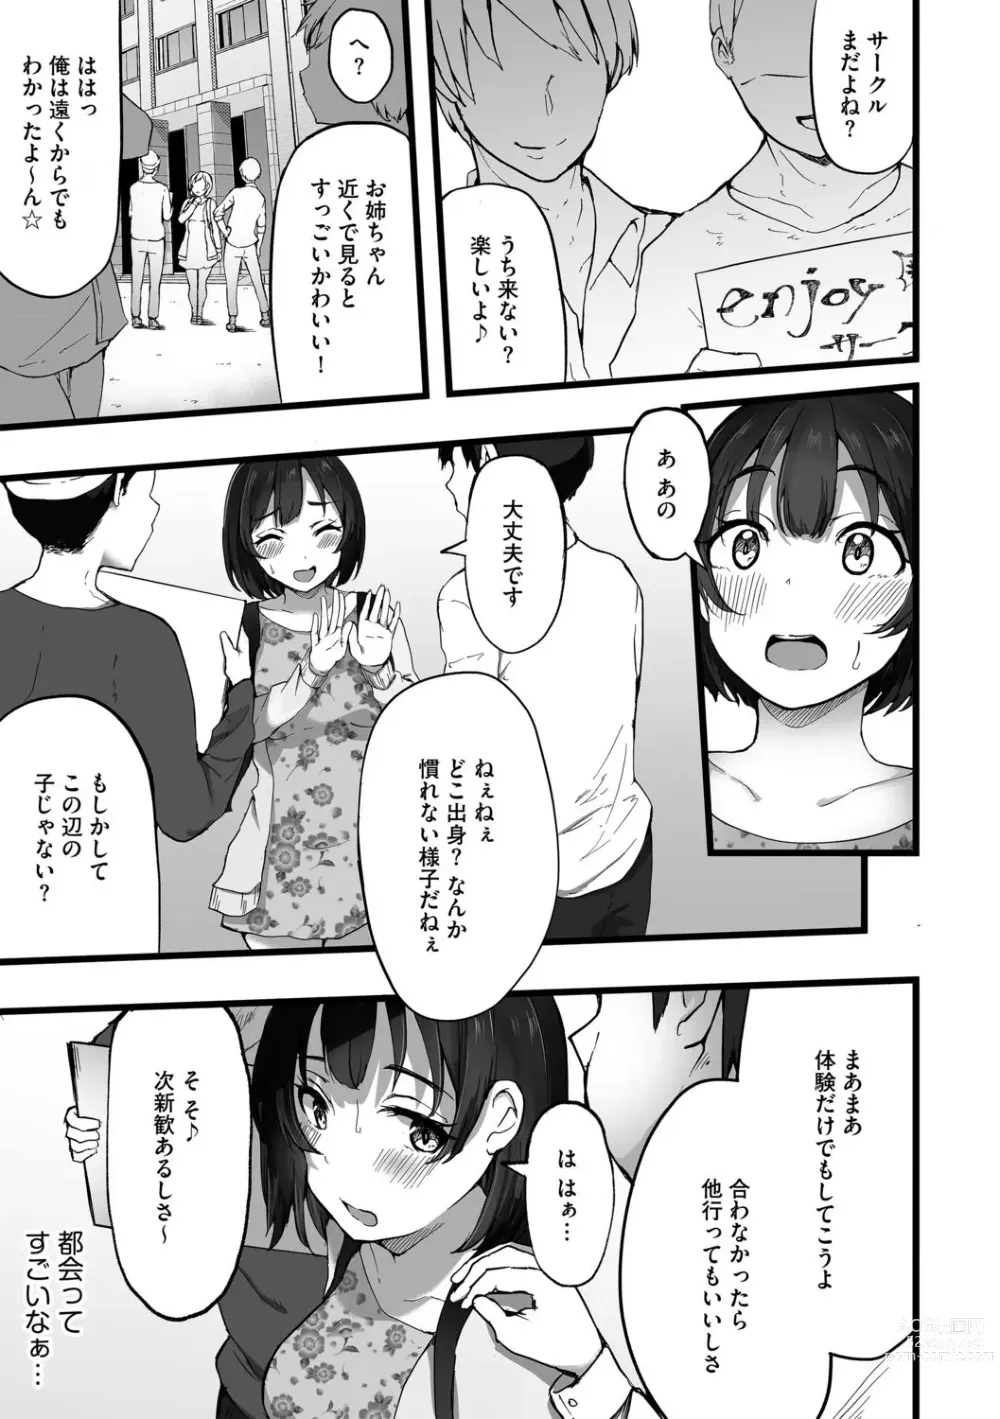 Page 5 of manga Tokai Asobi 1-2